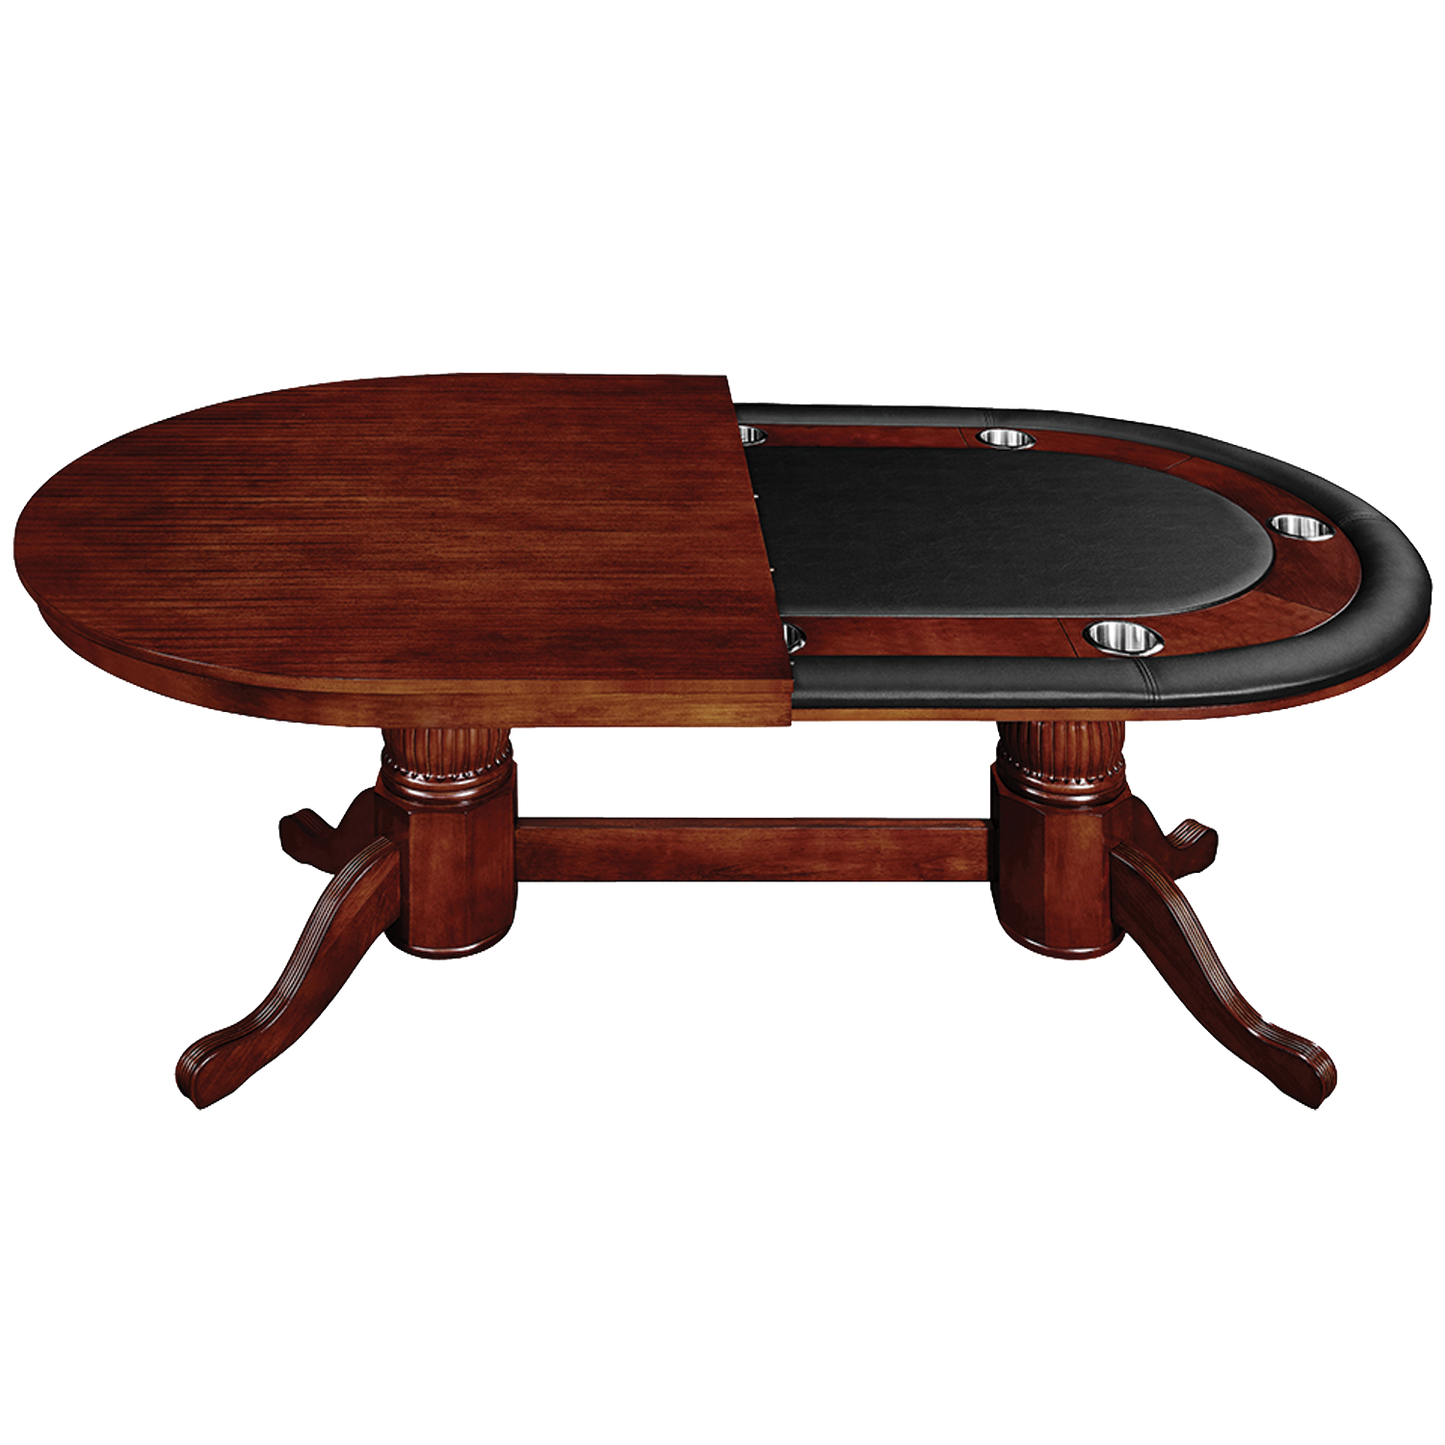 Ram 84" Texas Hold'EM Poker Game Table